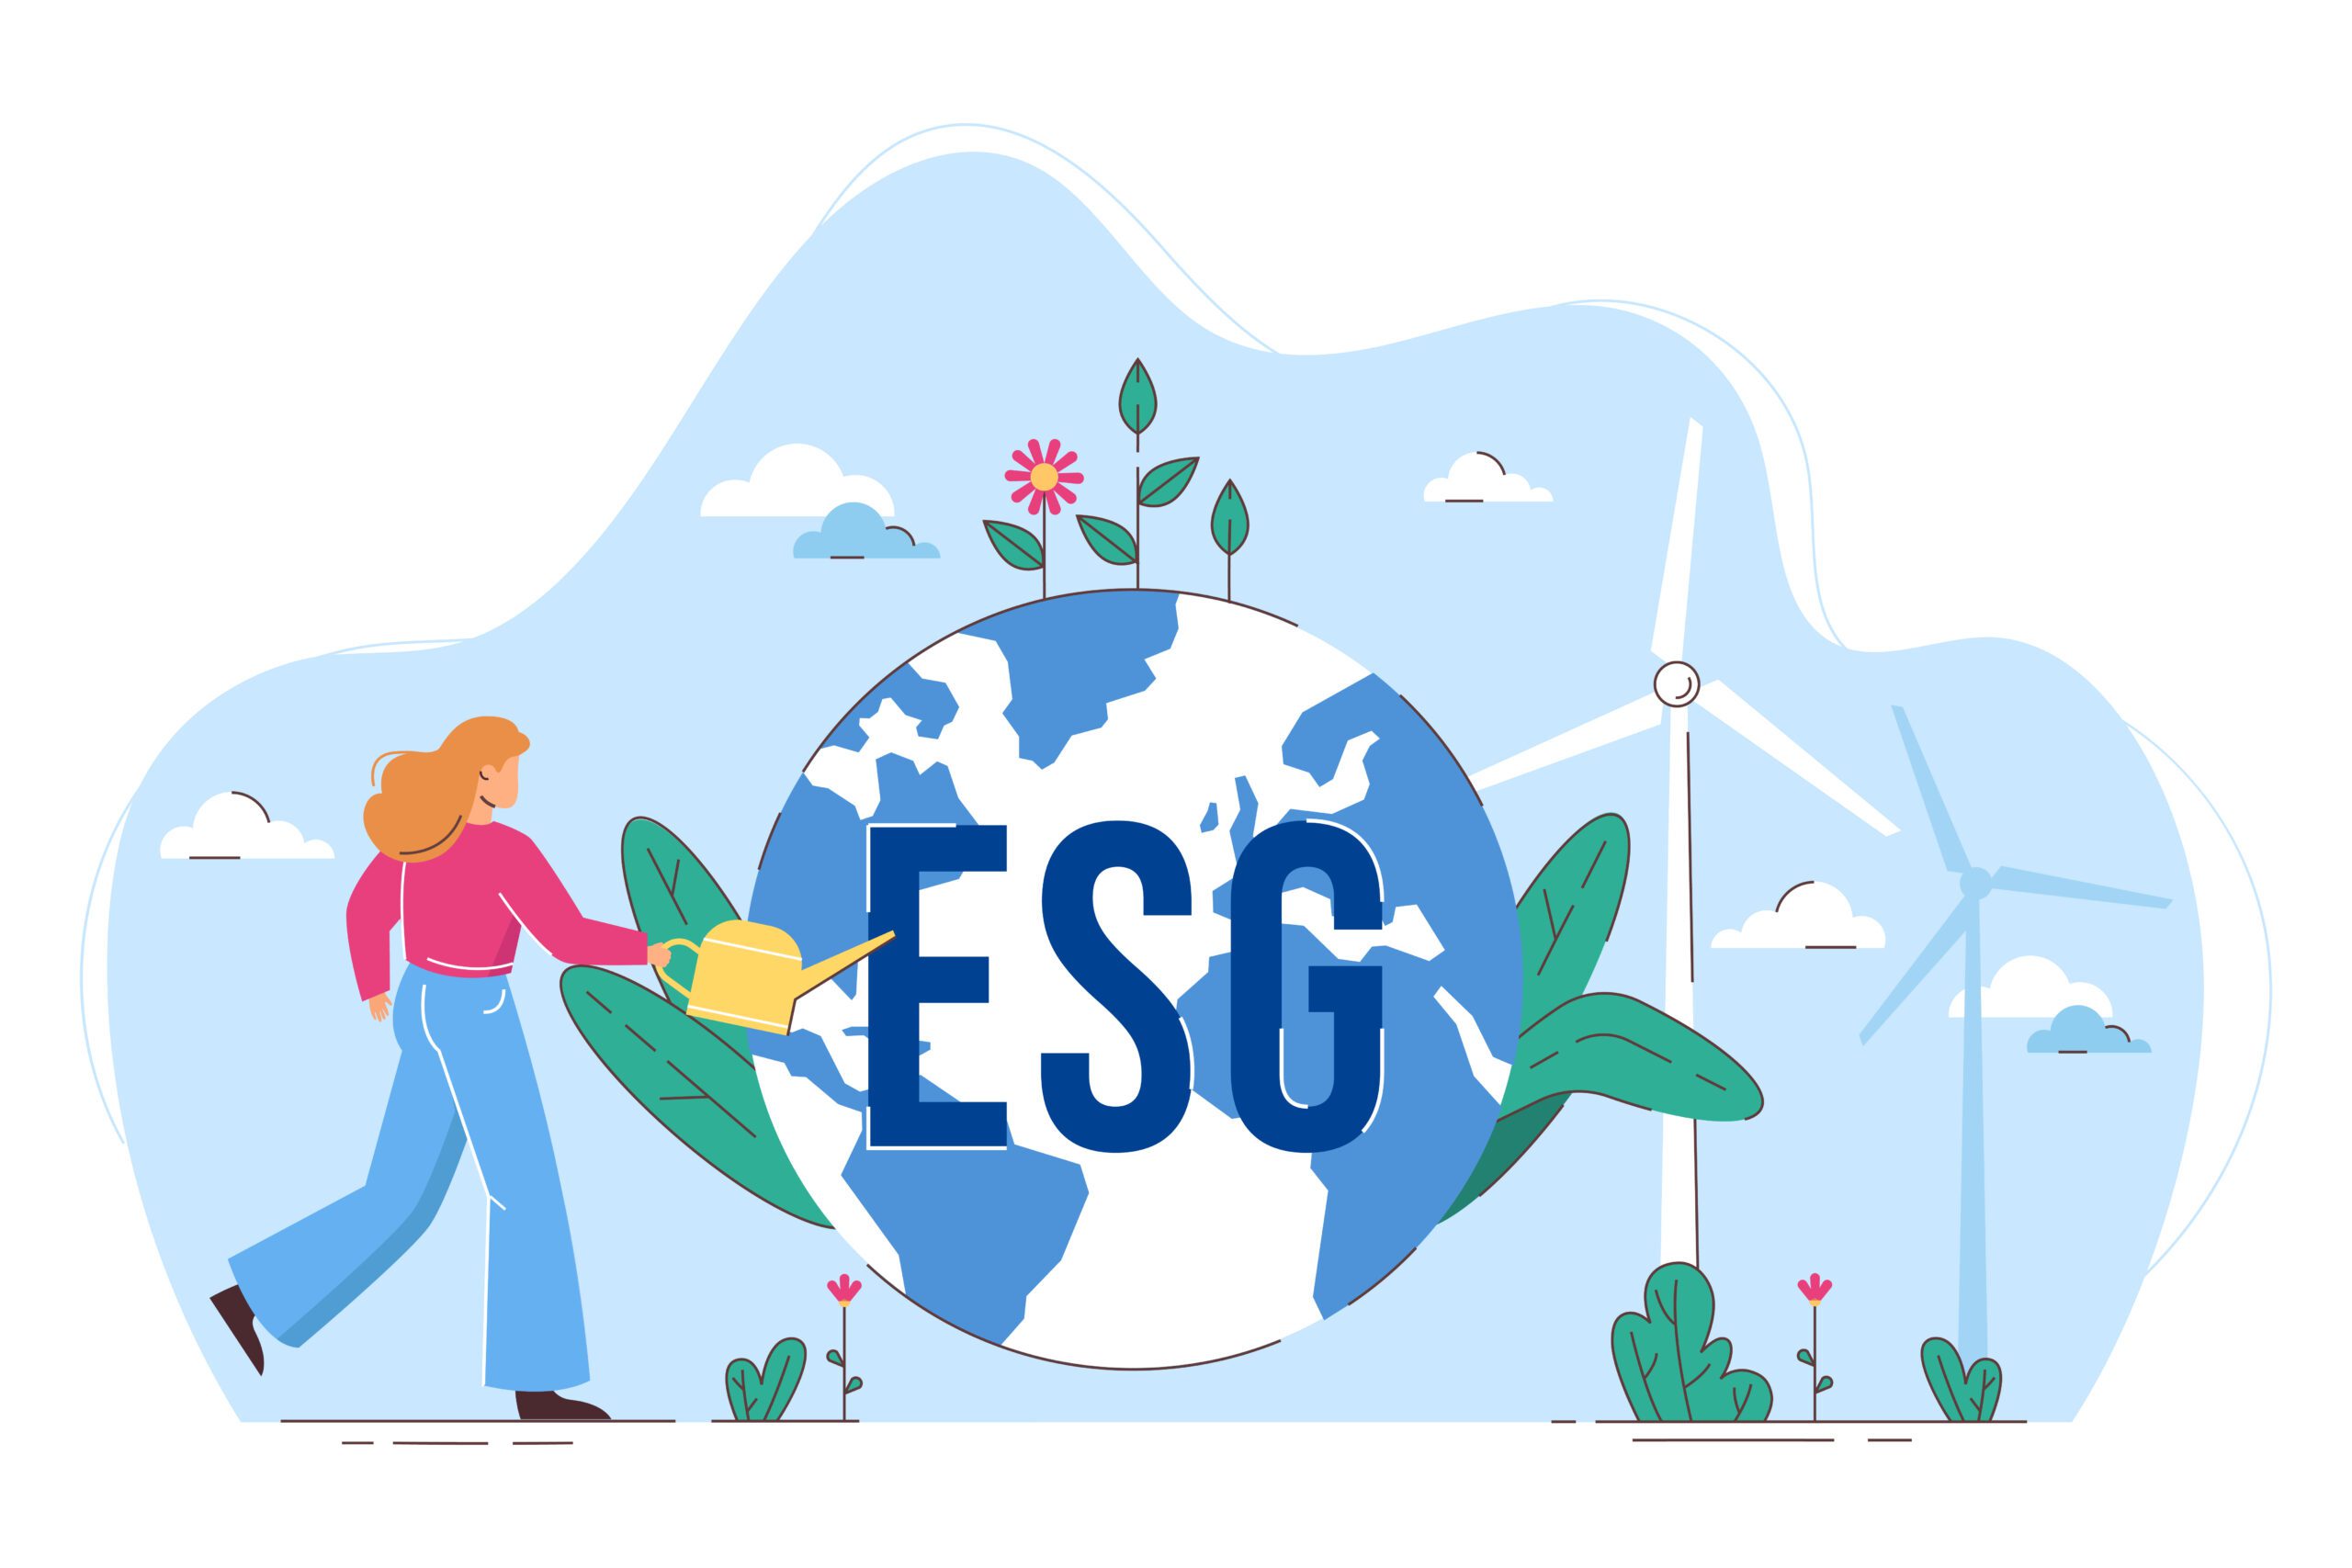 ESG Data